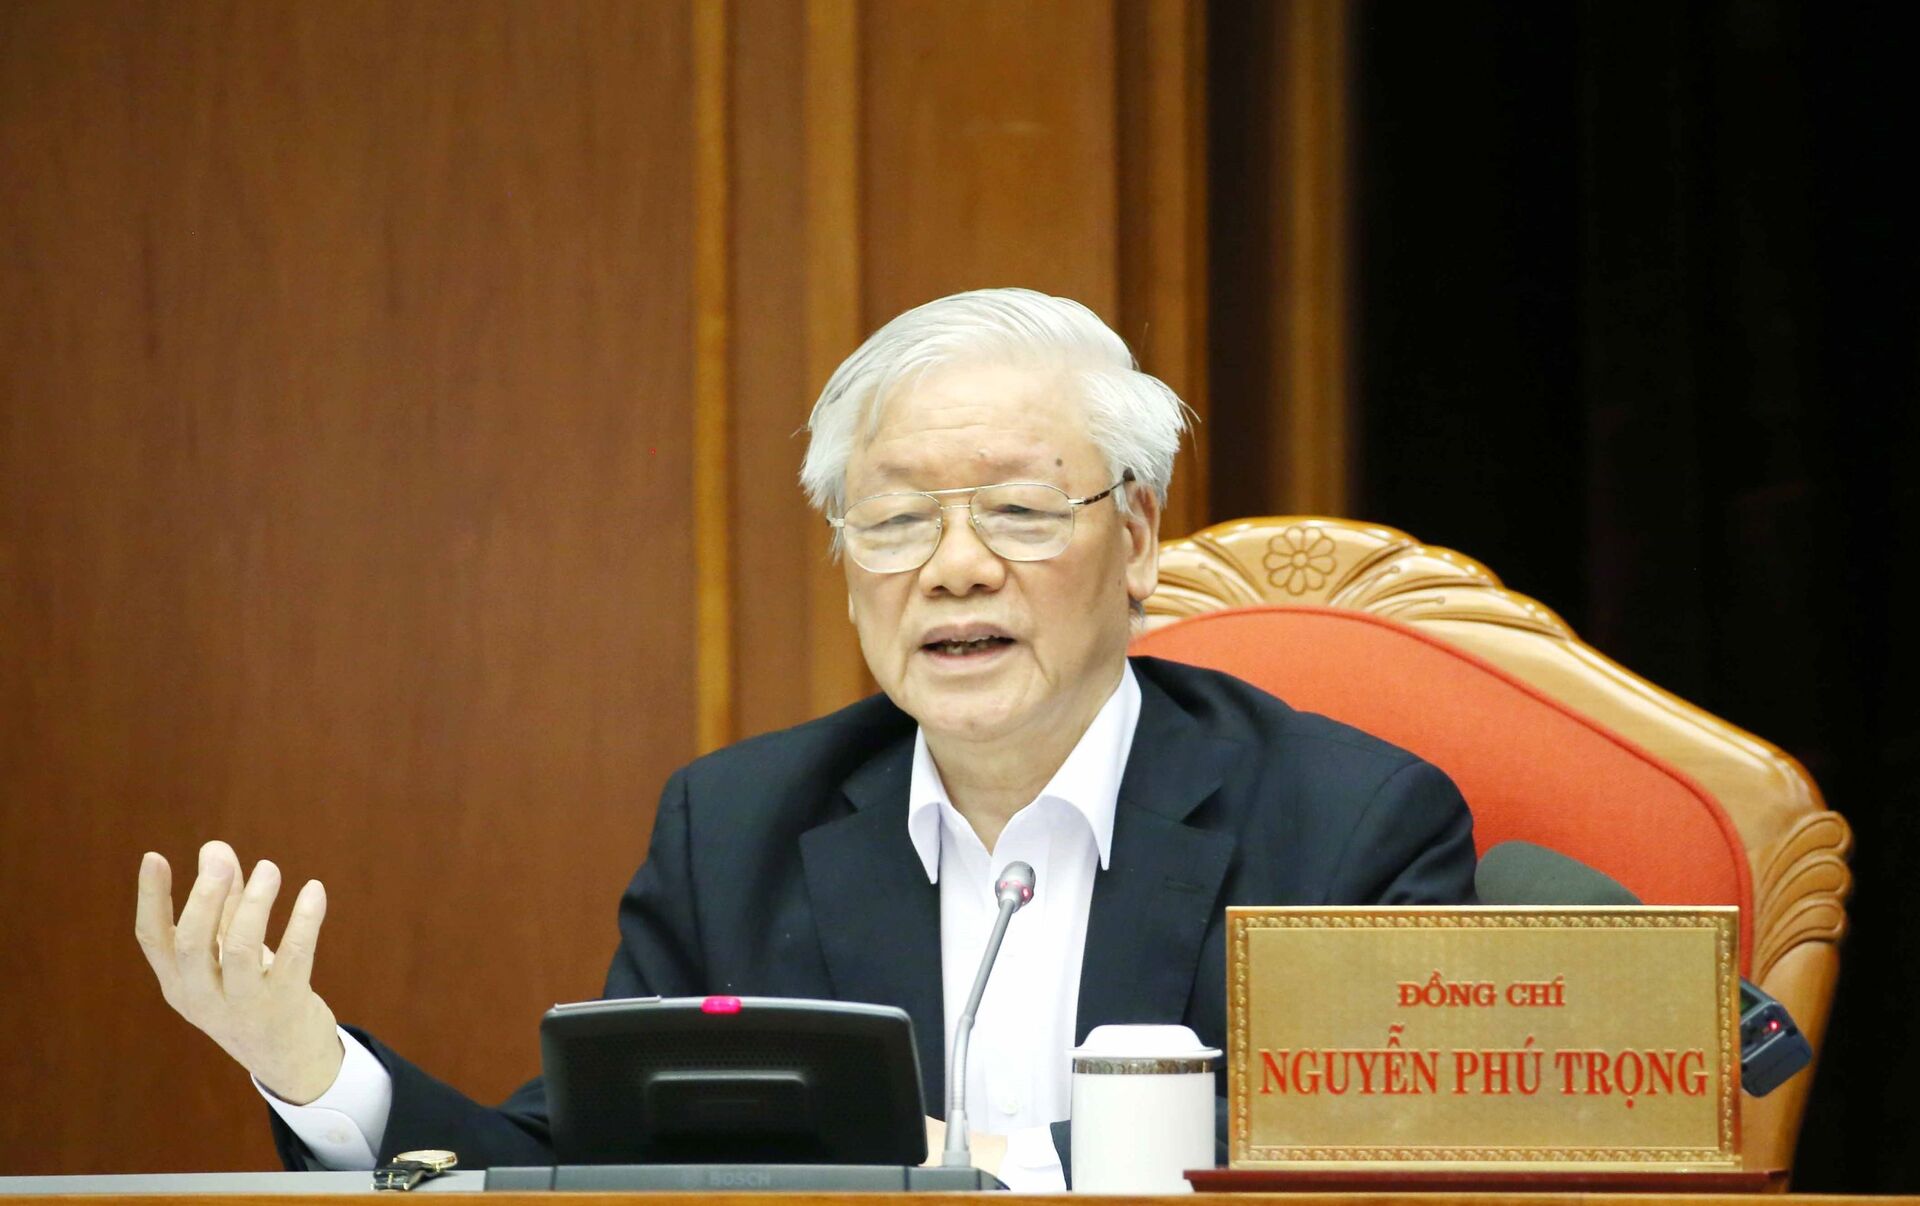 Нгуен фу Чонг. Генерального секретаря Нгуен фу Чонга в борьбе с коррупцией в Вьетнам. Bao 13